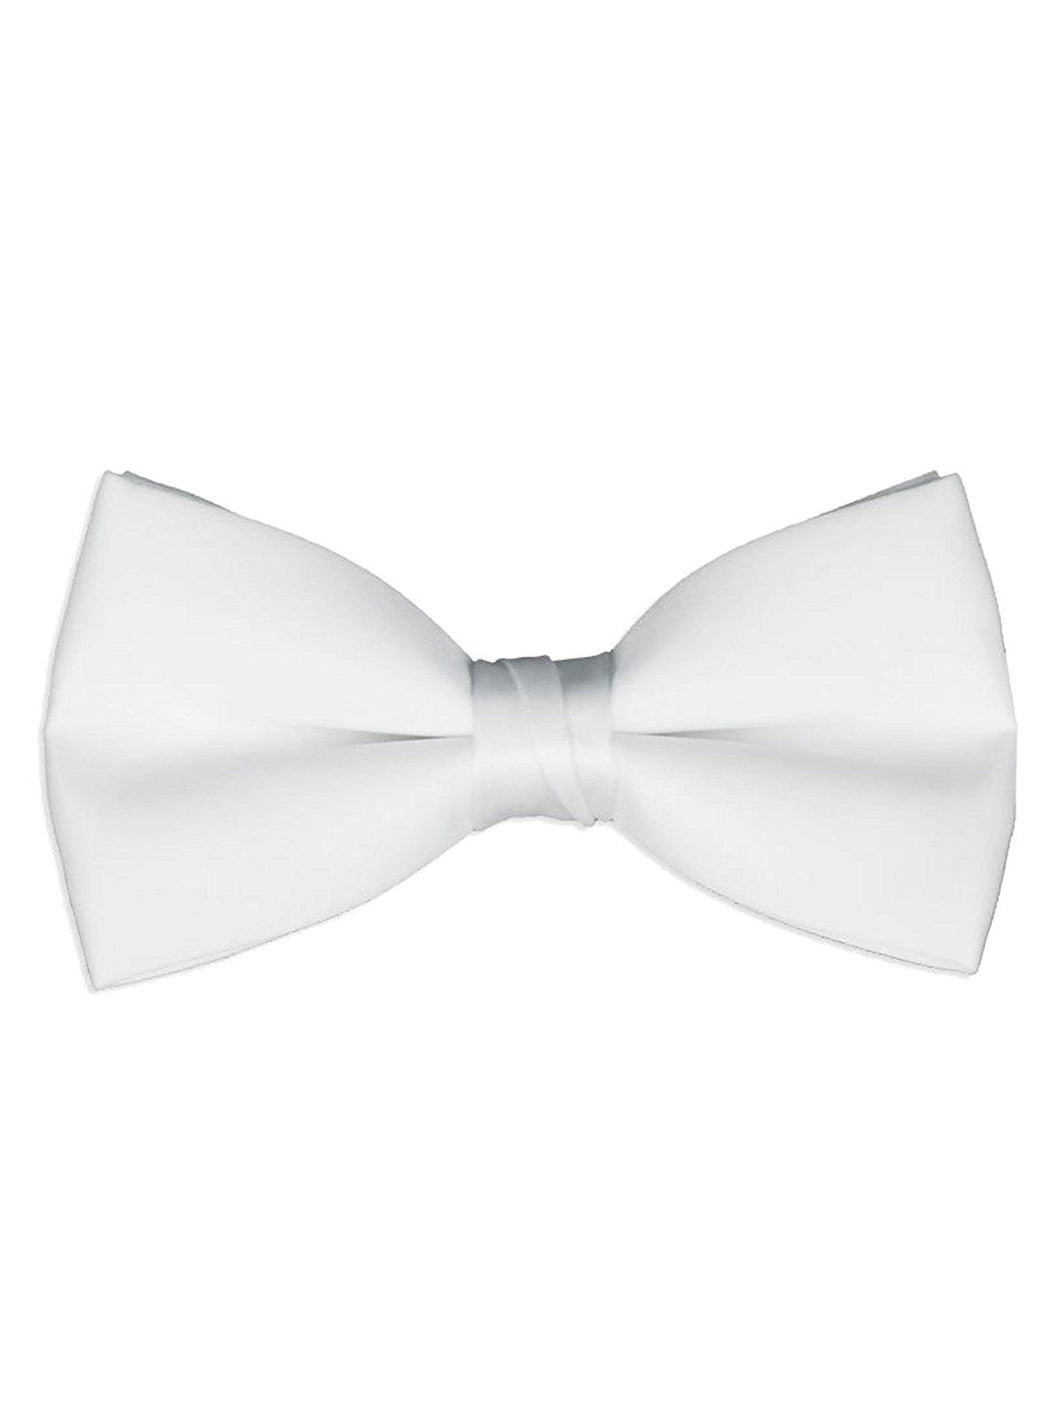 Men's Classic Pre-Tied Formal Tuxedo Bow Tie - White